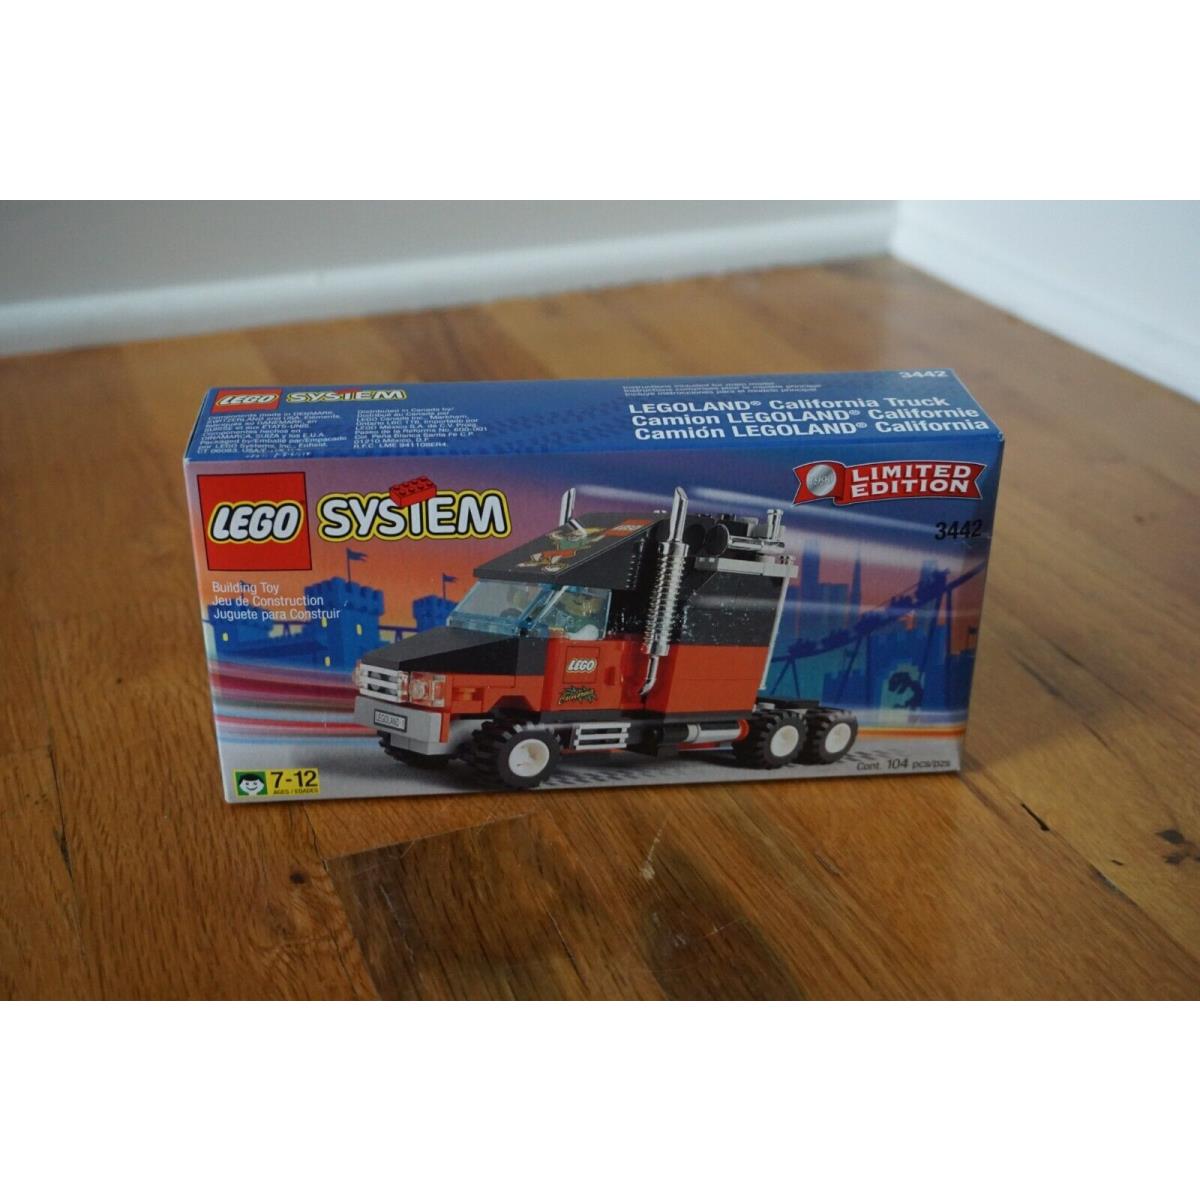 Lego System Limited Ed. Legoland California Truck Set 3442